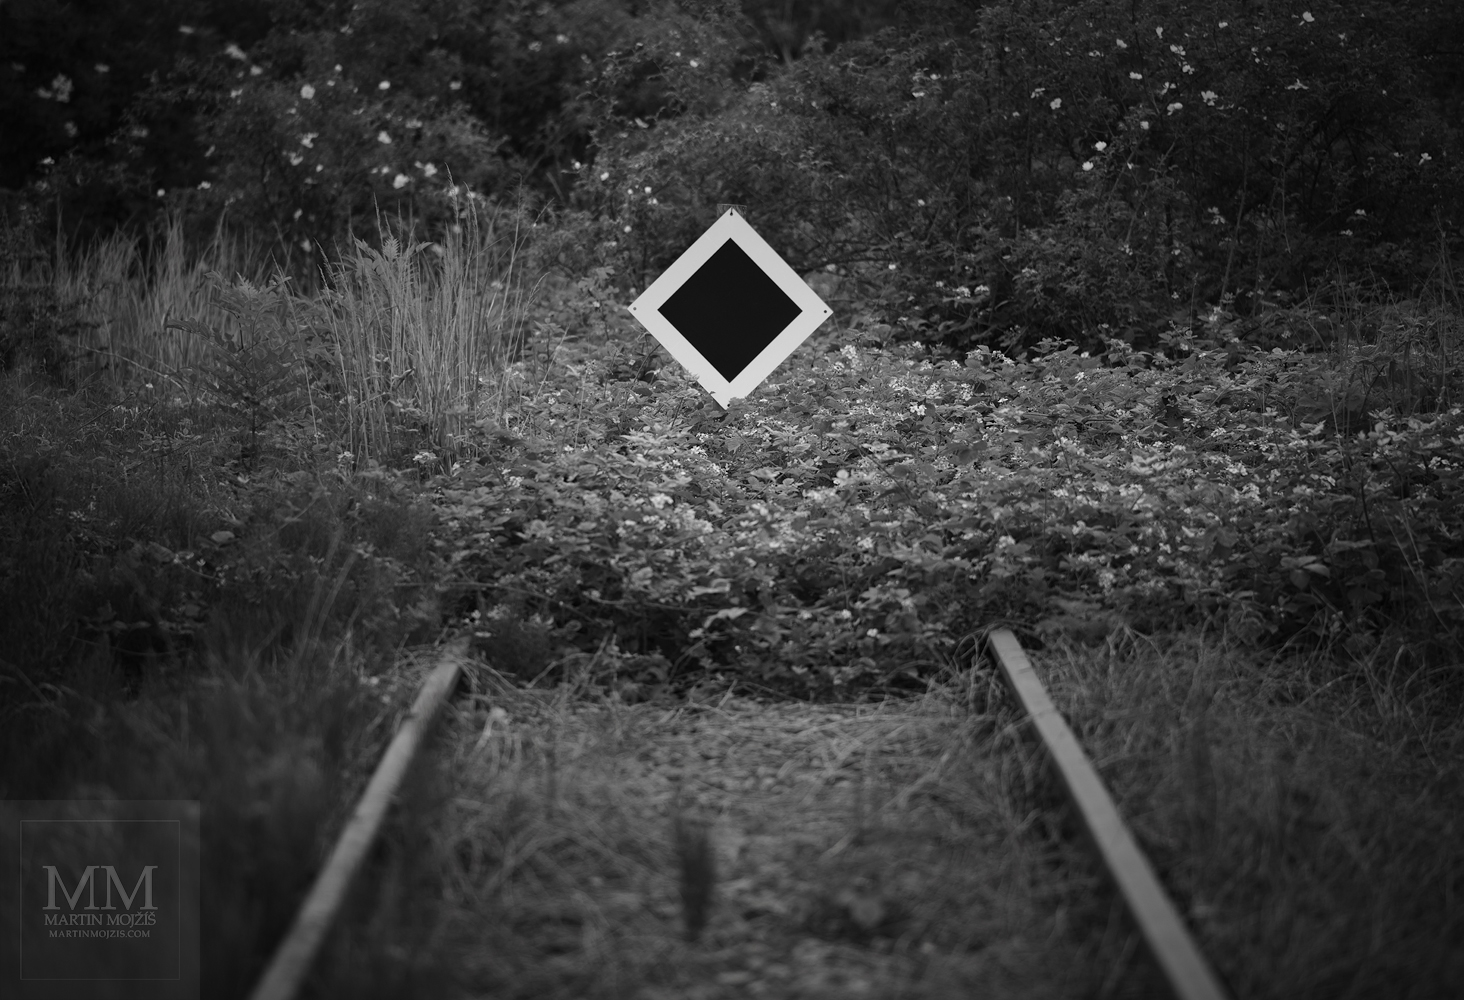 Železniční koleje končící v travinách a keřích. Umělecká černobílá fotografie s názvem KONEC A ZAČÁTEK. Fotograf Martin Mojžíš.